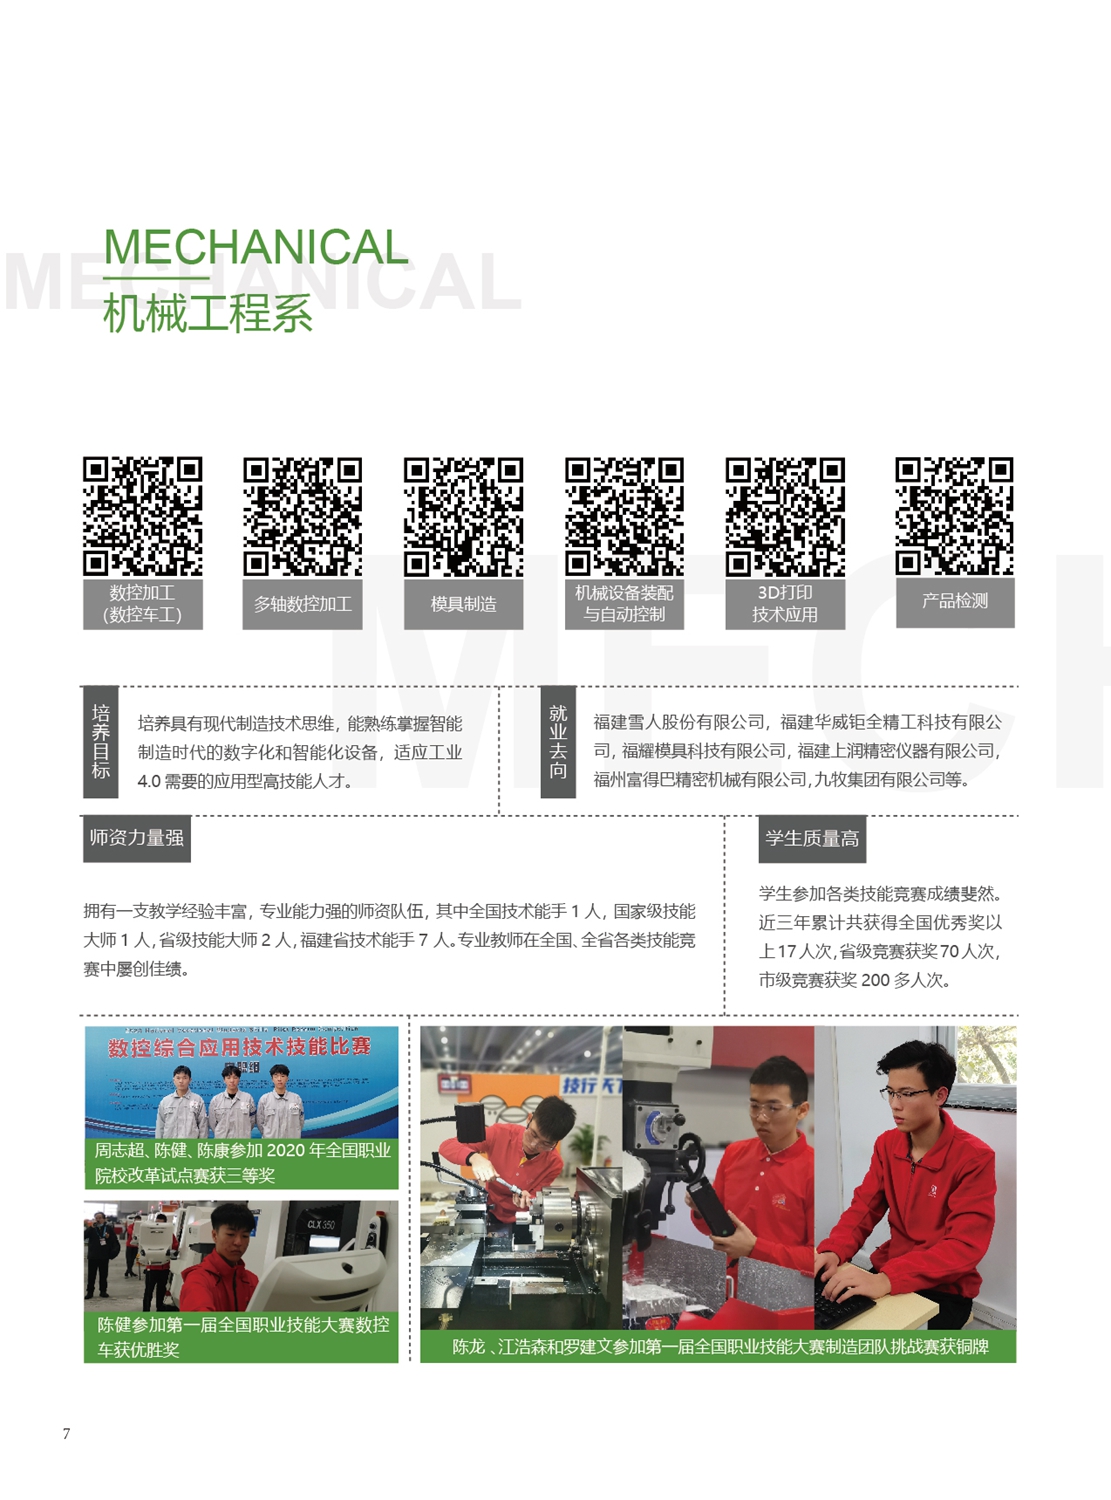 福州第一技师学院2021年招生手册(图8)